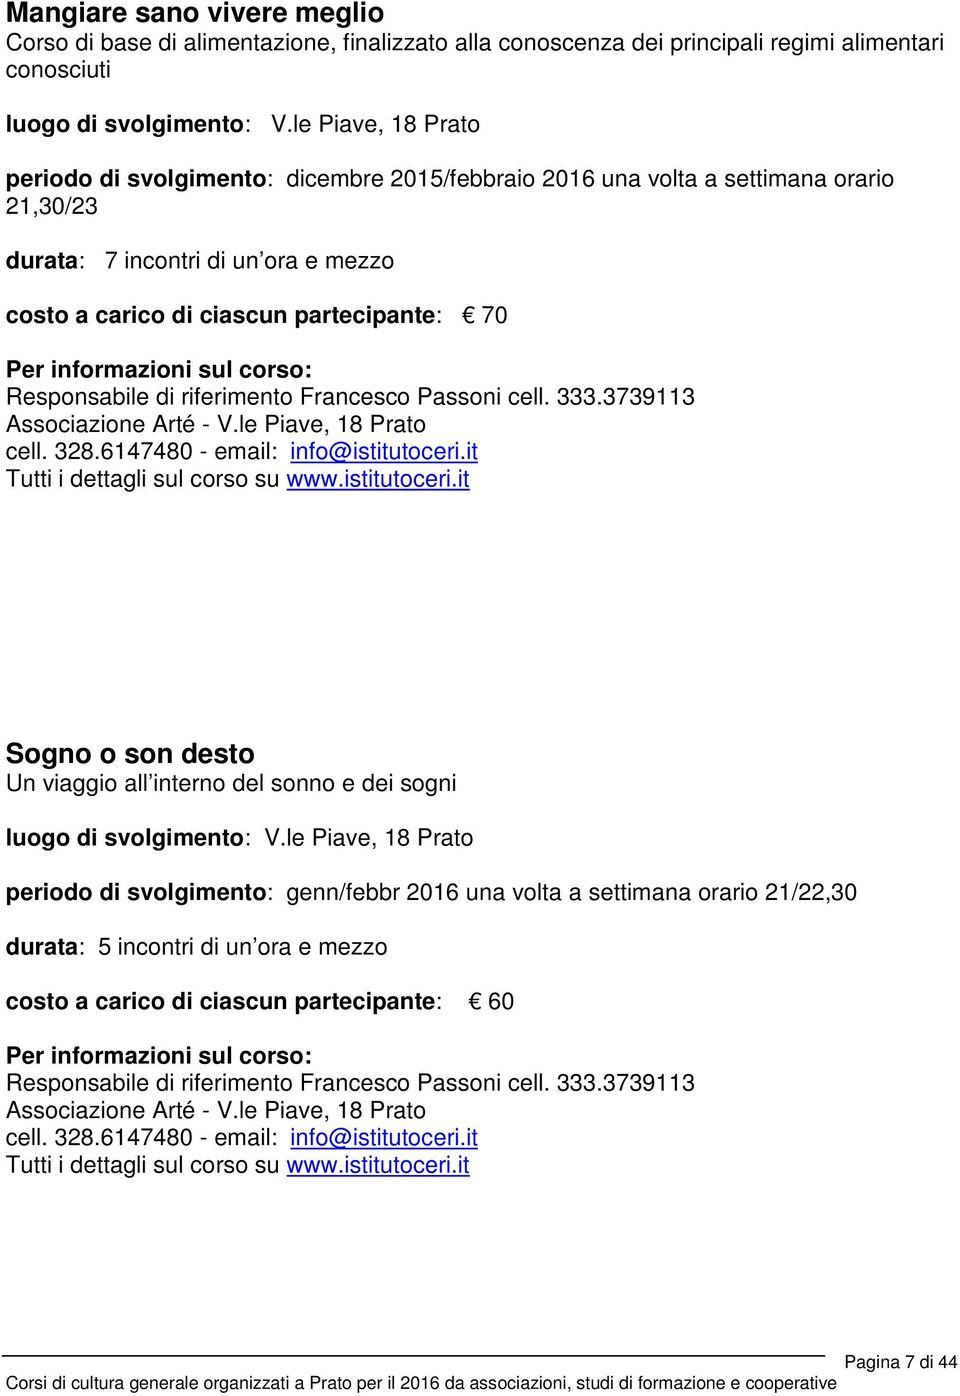 Responsabile di riferimento Francesco Passoni cell. 333.3739113 Associazione Arté - V.le Piave, 18 Prato cell. 328.6147480 - email: info@istitutoceri.